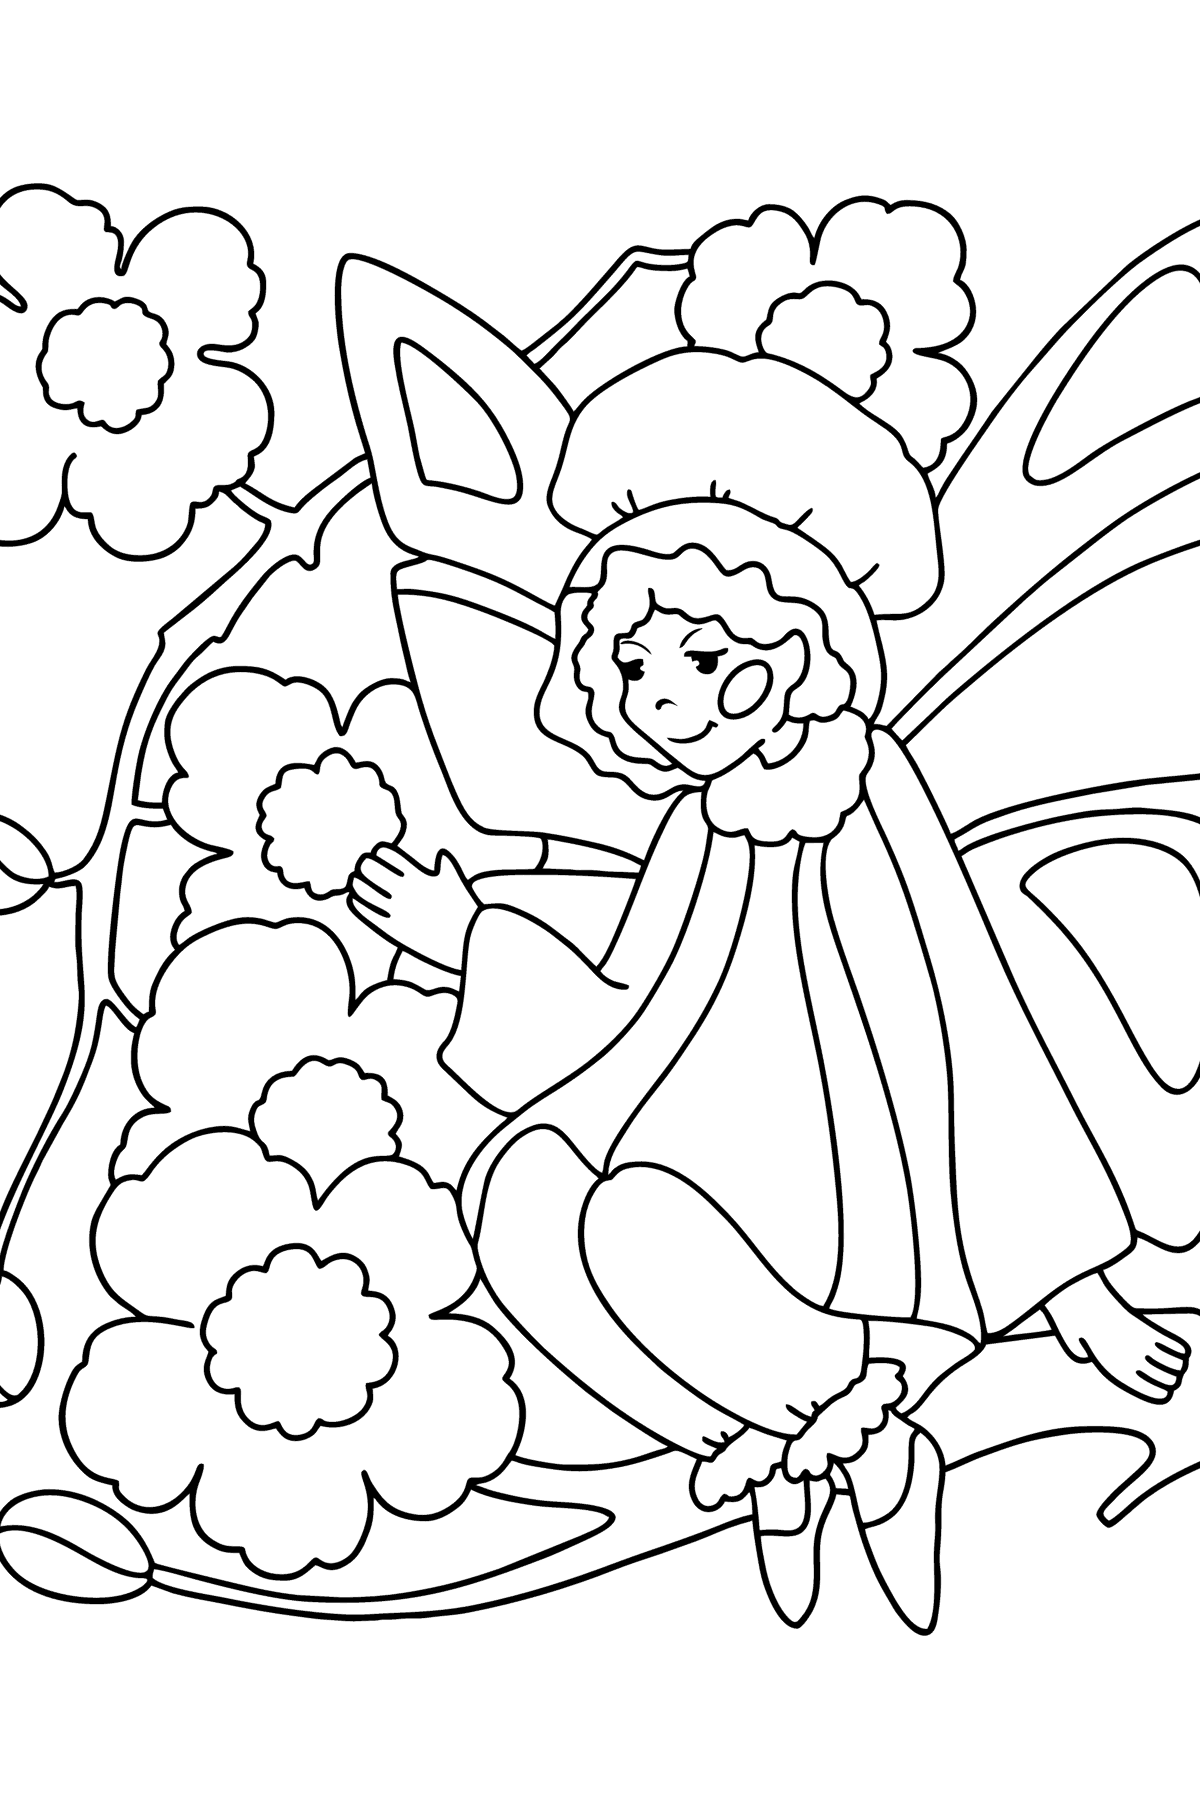 Dibujo de Hada en una flor para colorear - Dibujos para Colorear para Niños